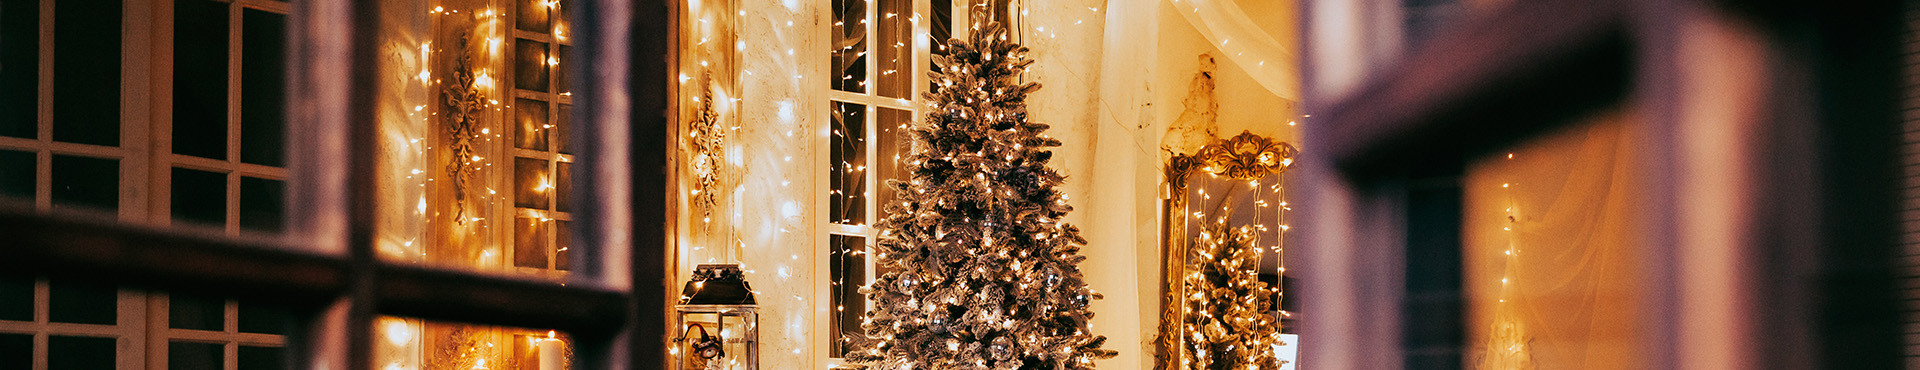 Christmas trees plus led lights